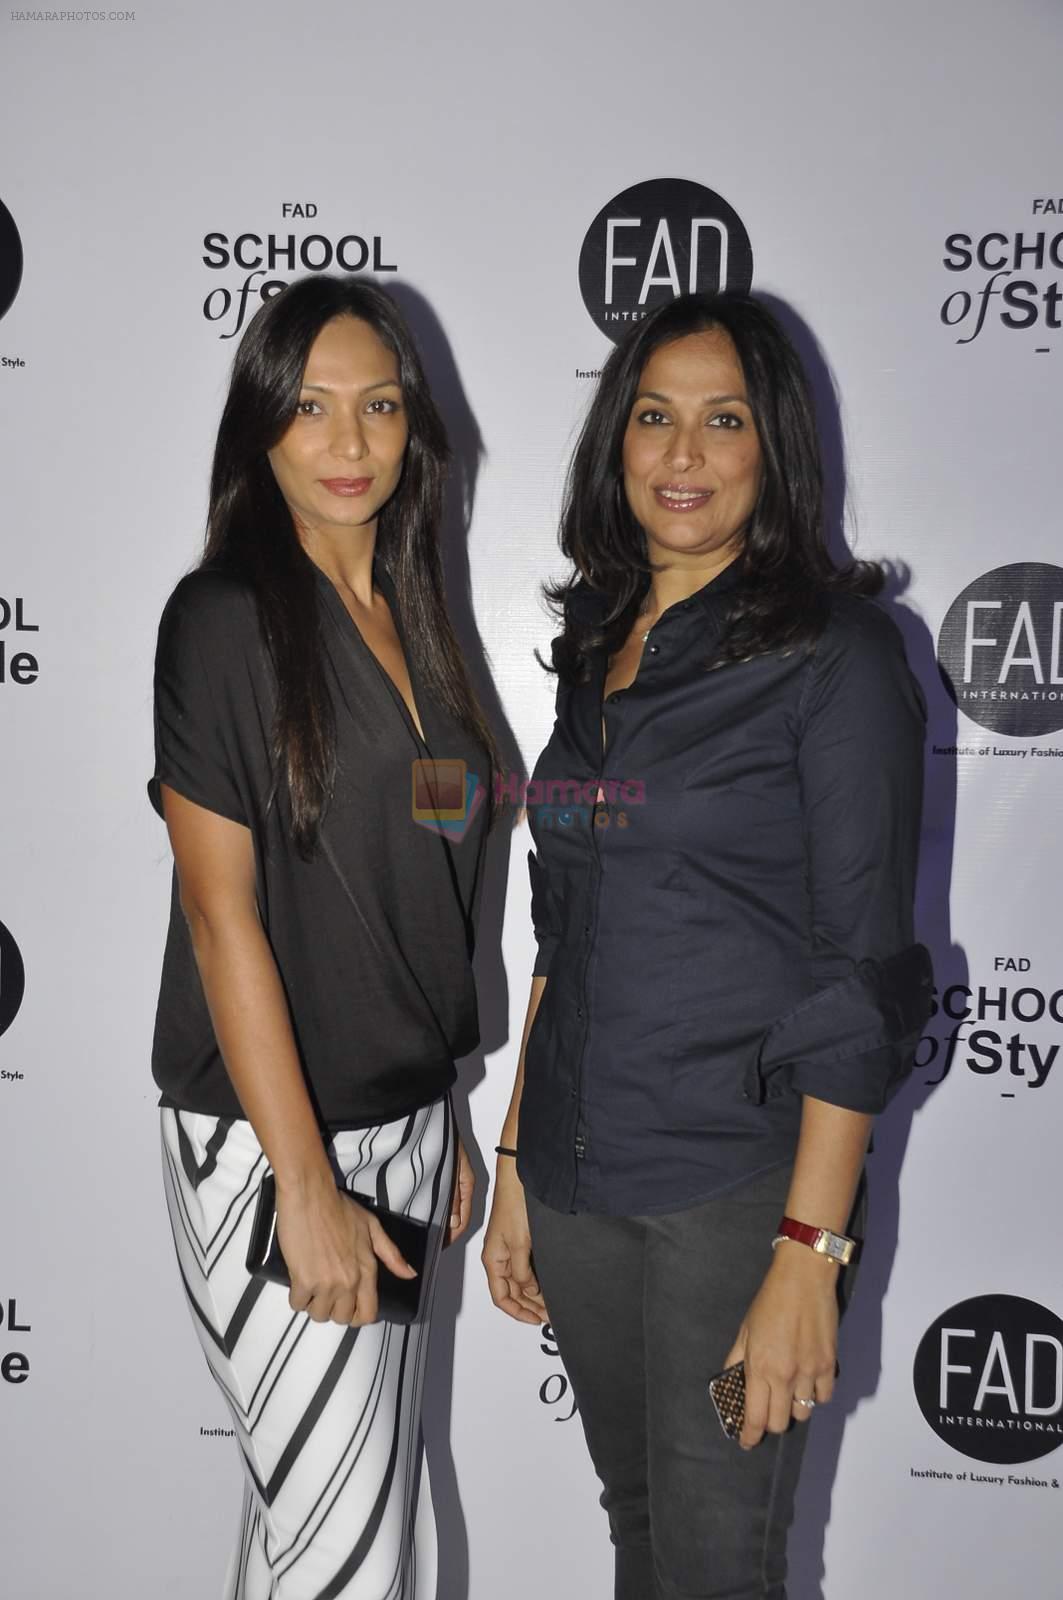 Shamita Singha hosts FAD International academy launch on 28th Nov 2015